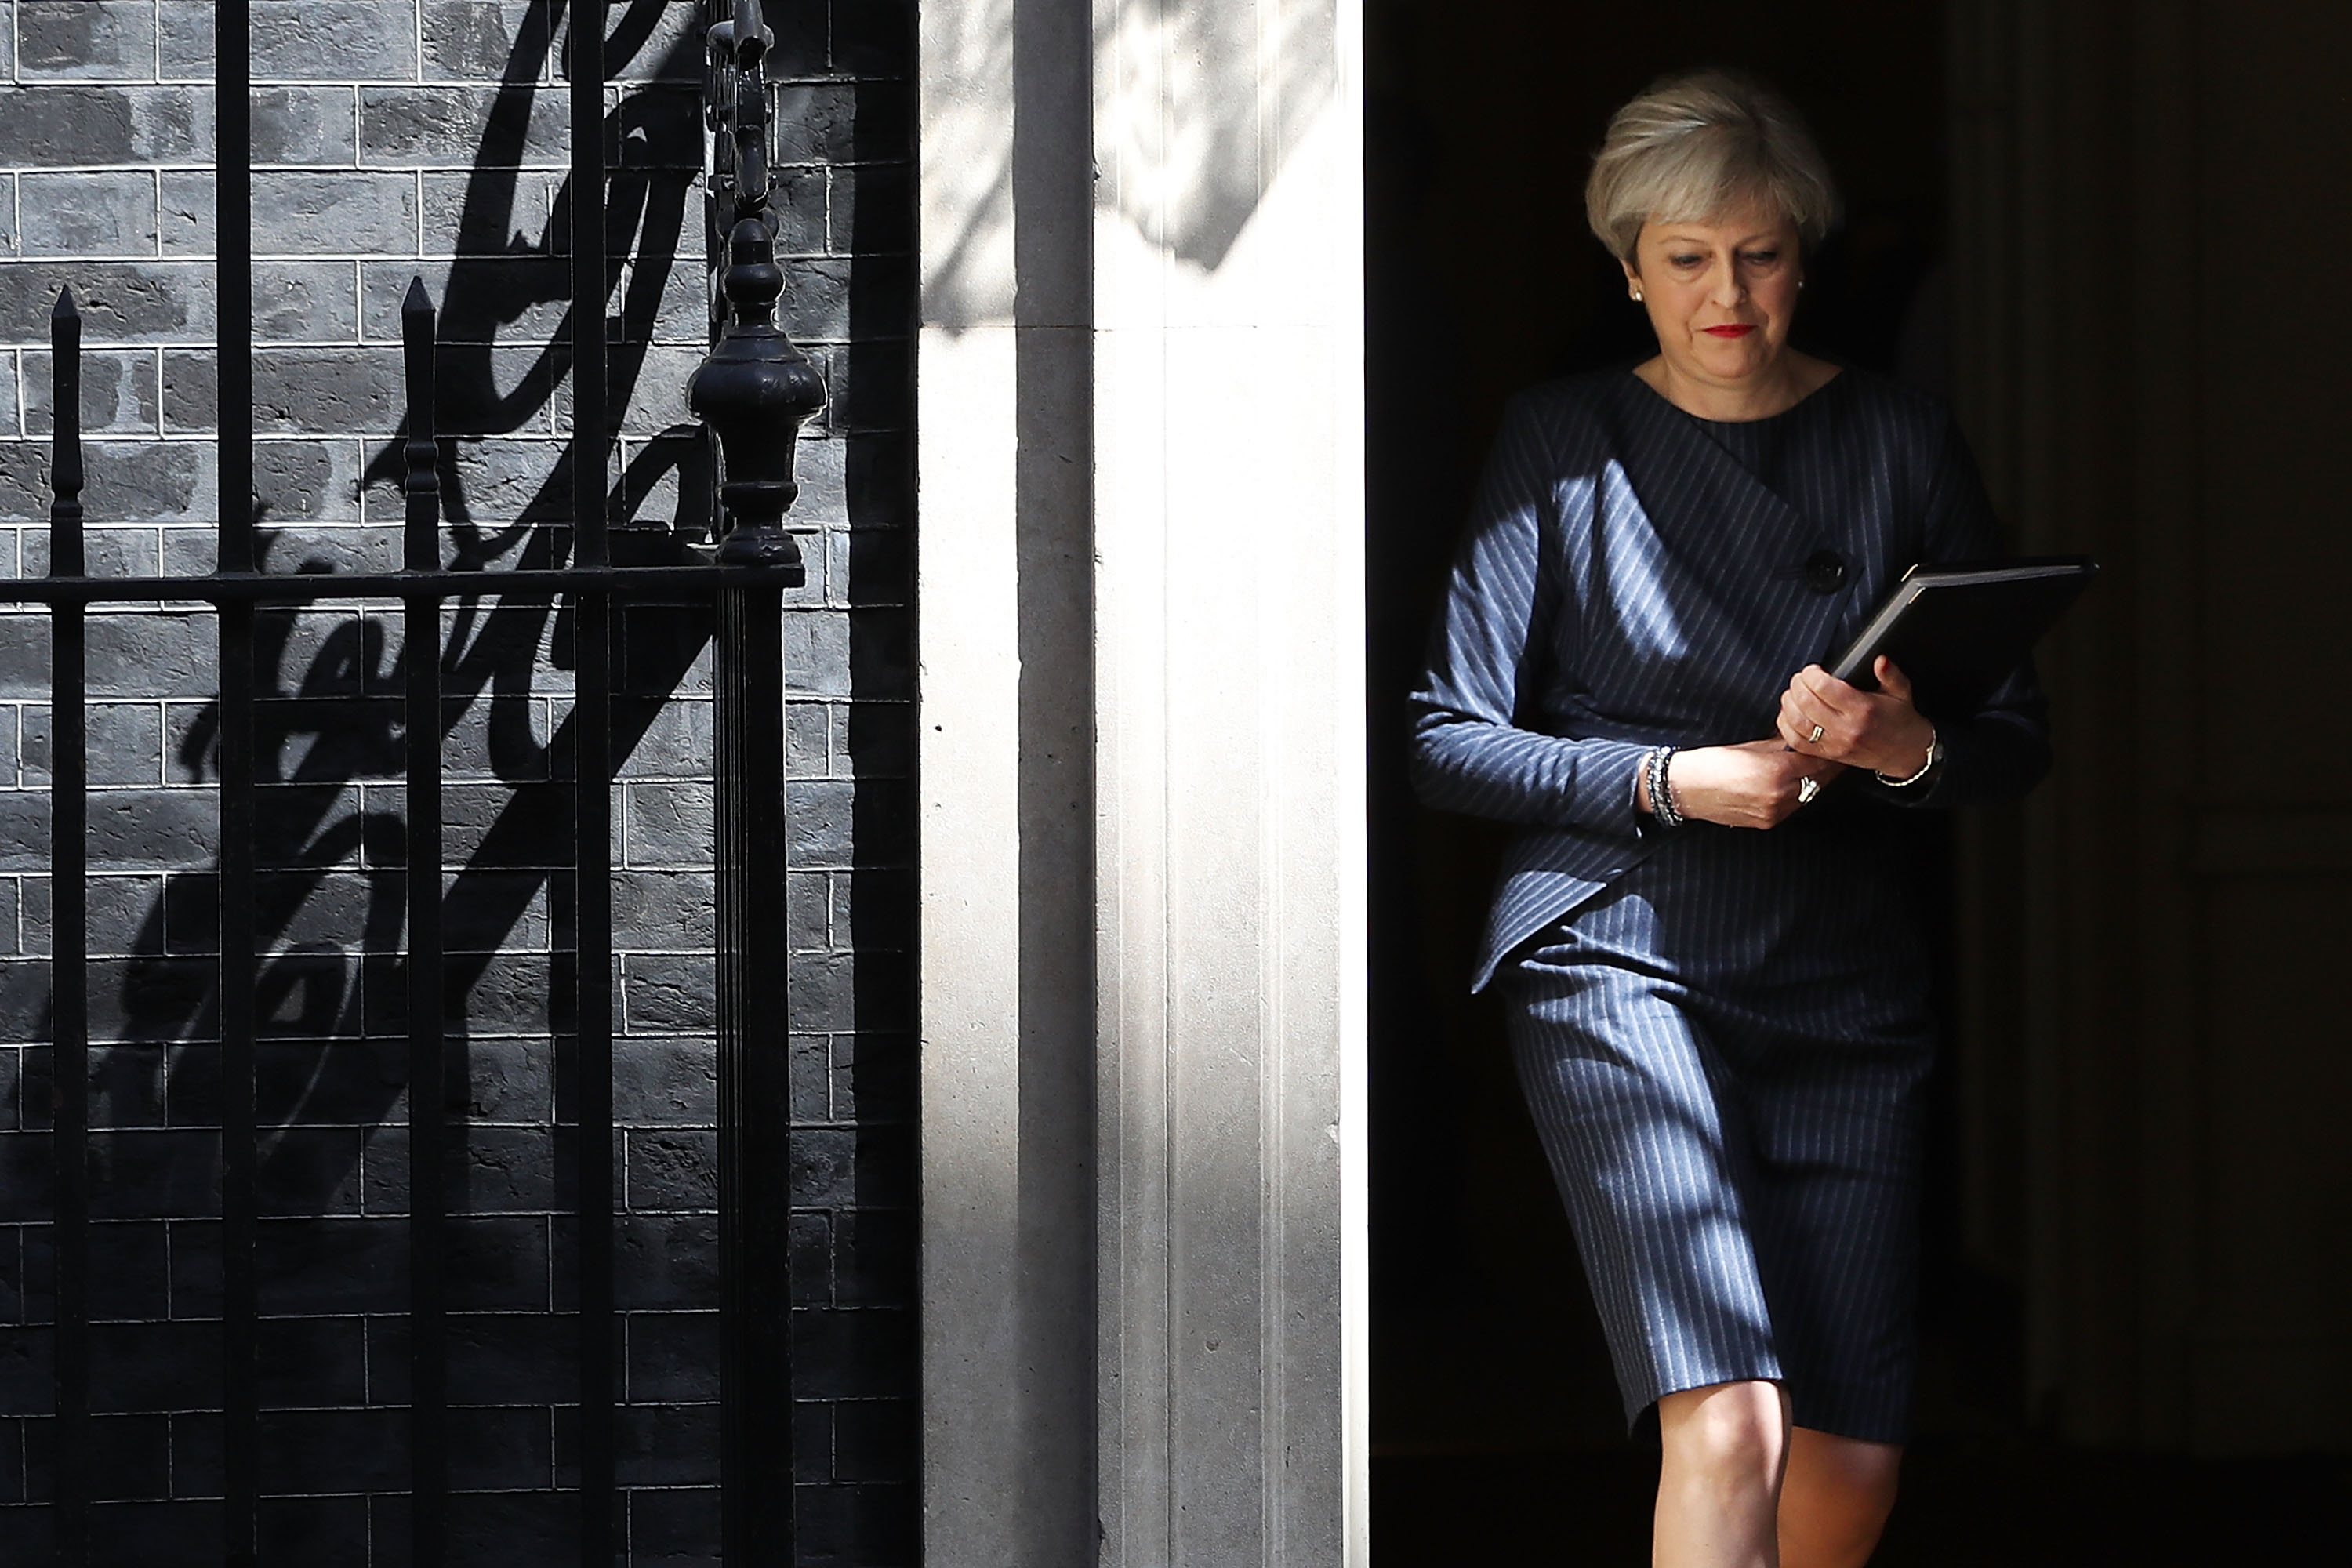 Theresa May exits 10 Downing Street 